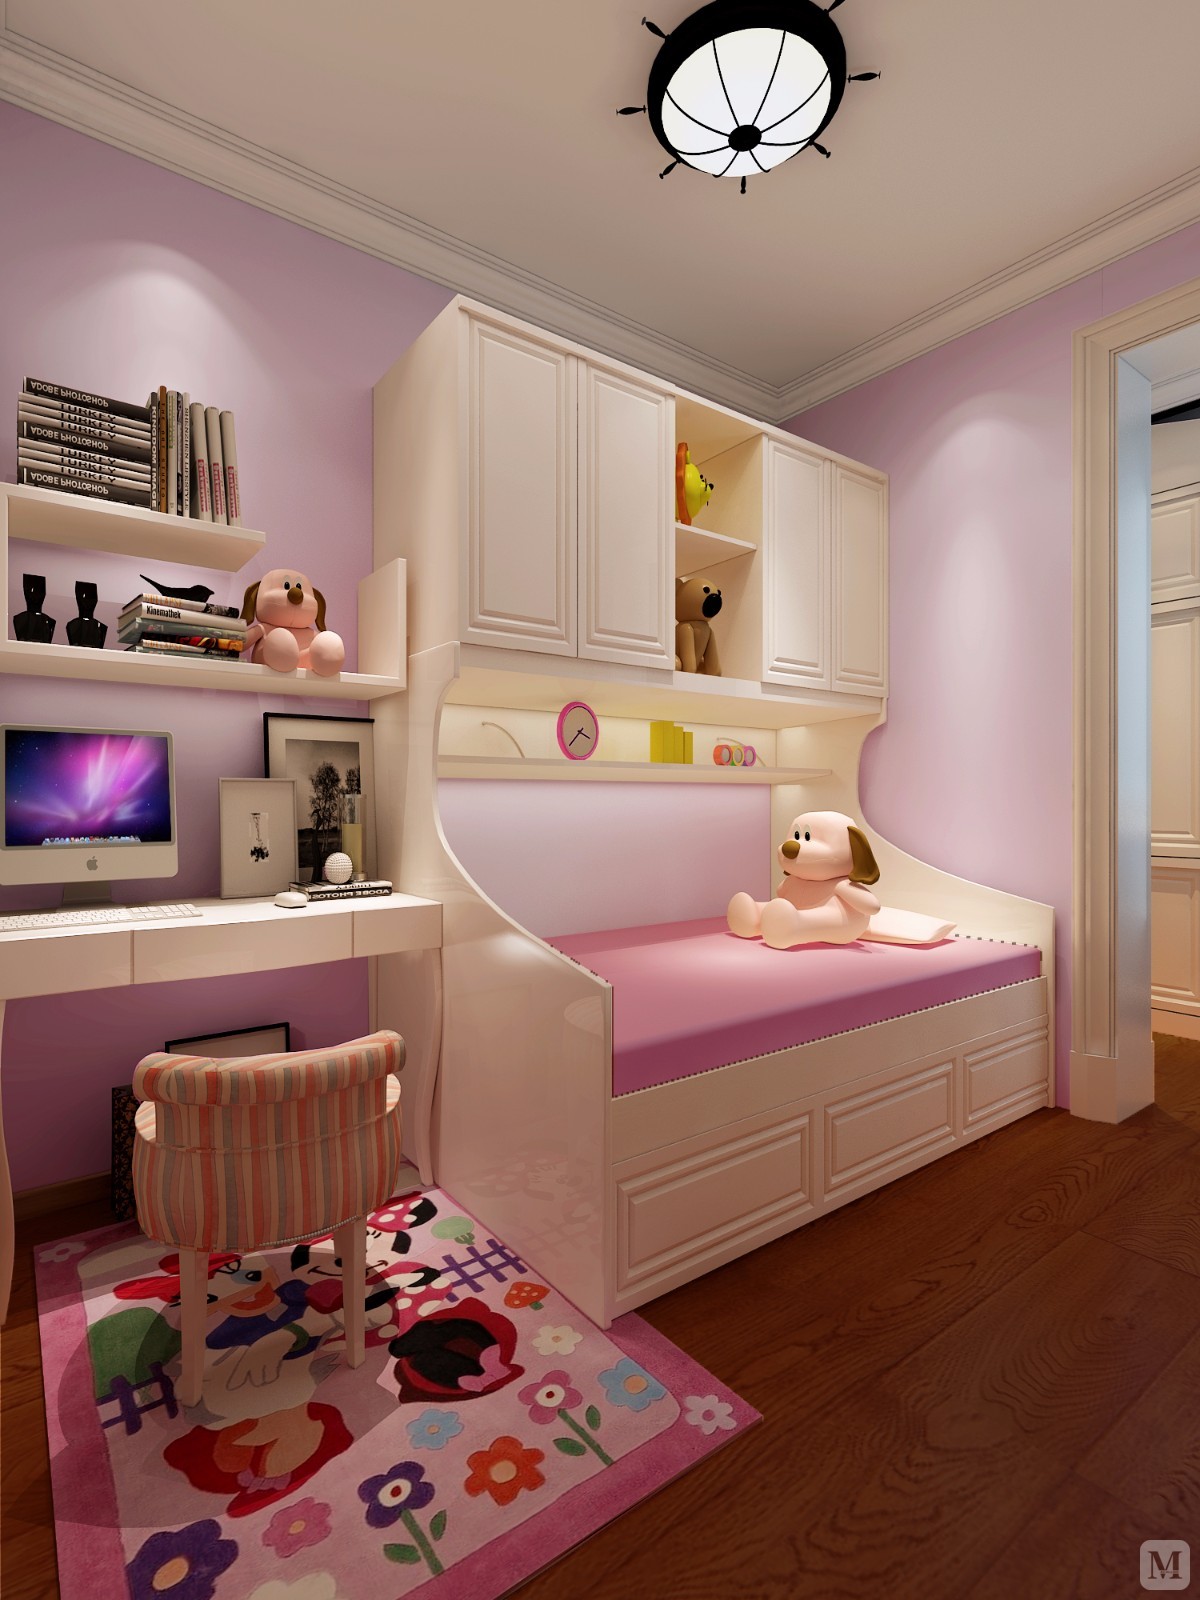 粉色靓丽的主色调让整个儿童房显得活泼可爱，床体的选择让房间更加的实用，软装的搭配粉色枕套与卧室格调交相呼应，满足主人对浪漫的追求。 它们仿佛在诉说、见证主人精致、有趣的旅程。